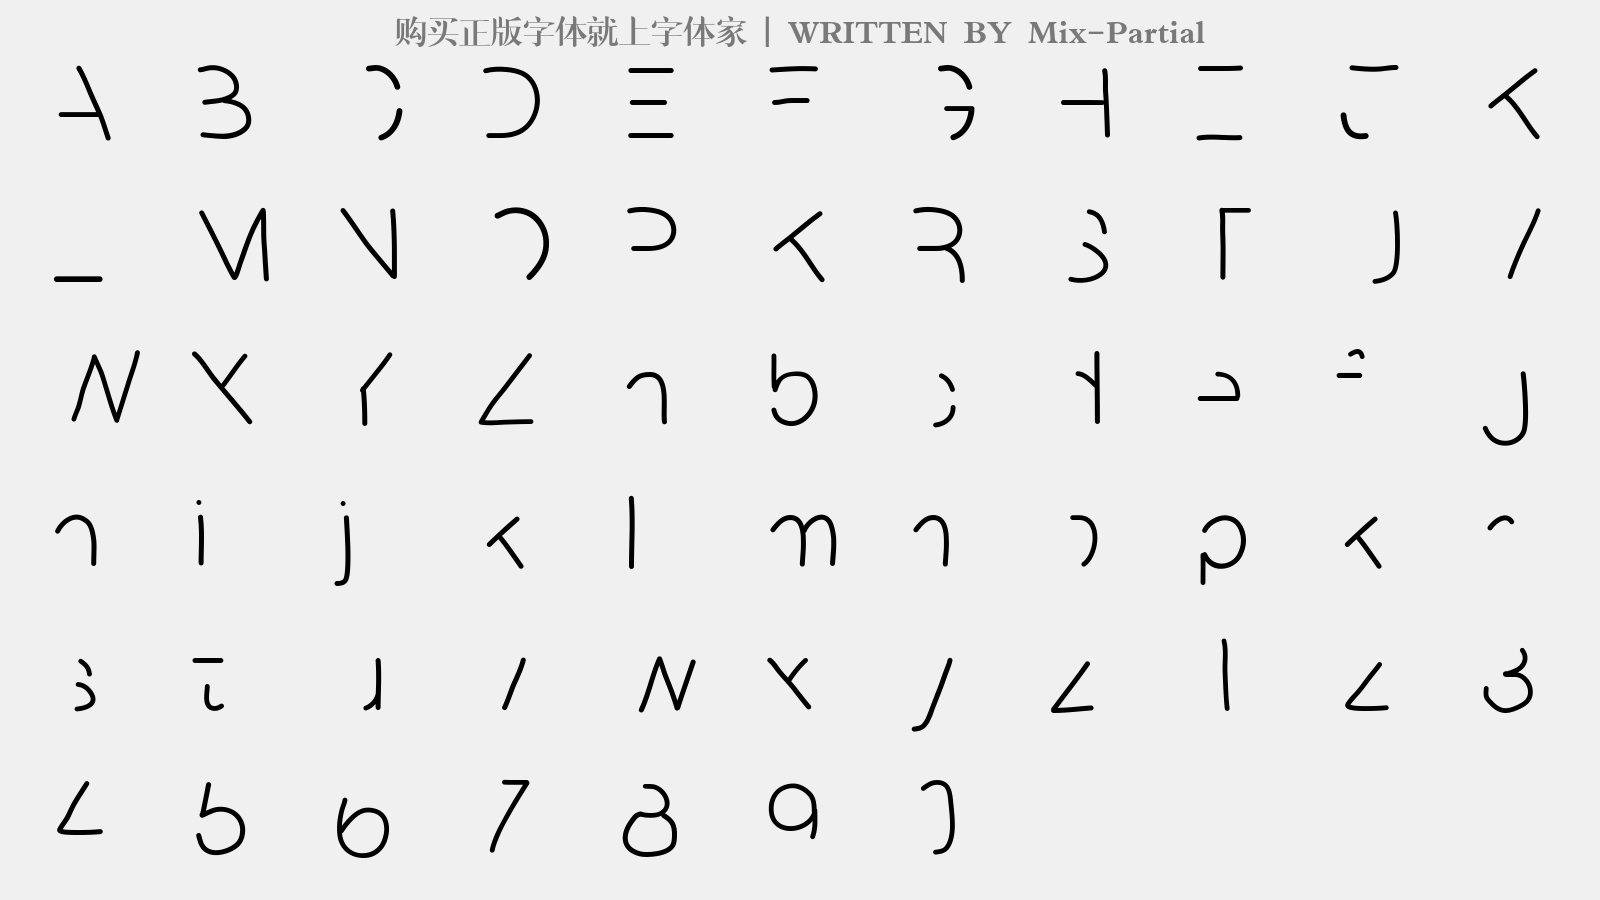 Mix-Partial - 大写字母/小写字母/数字